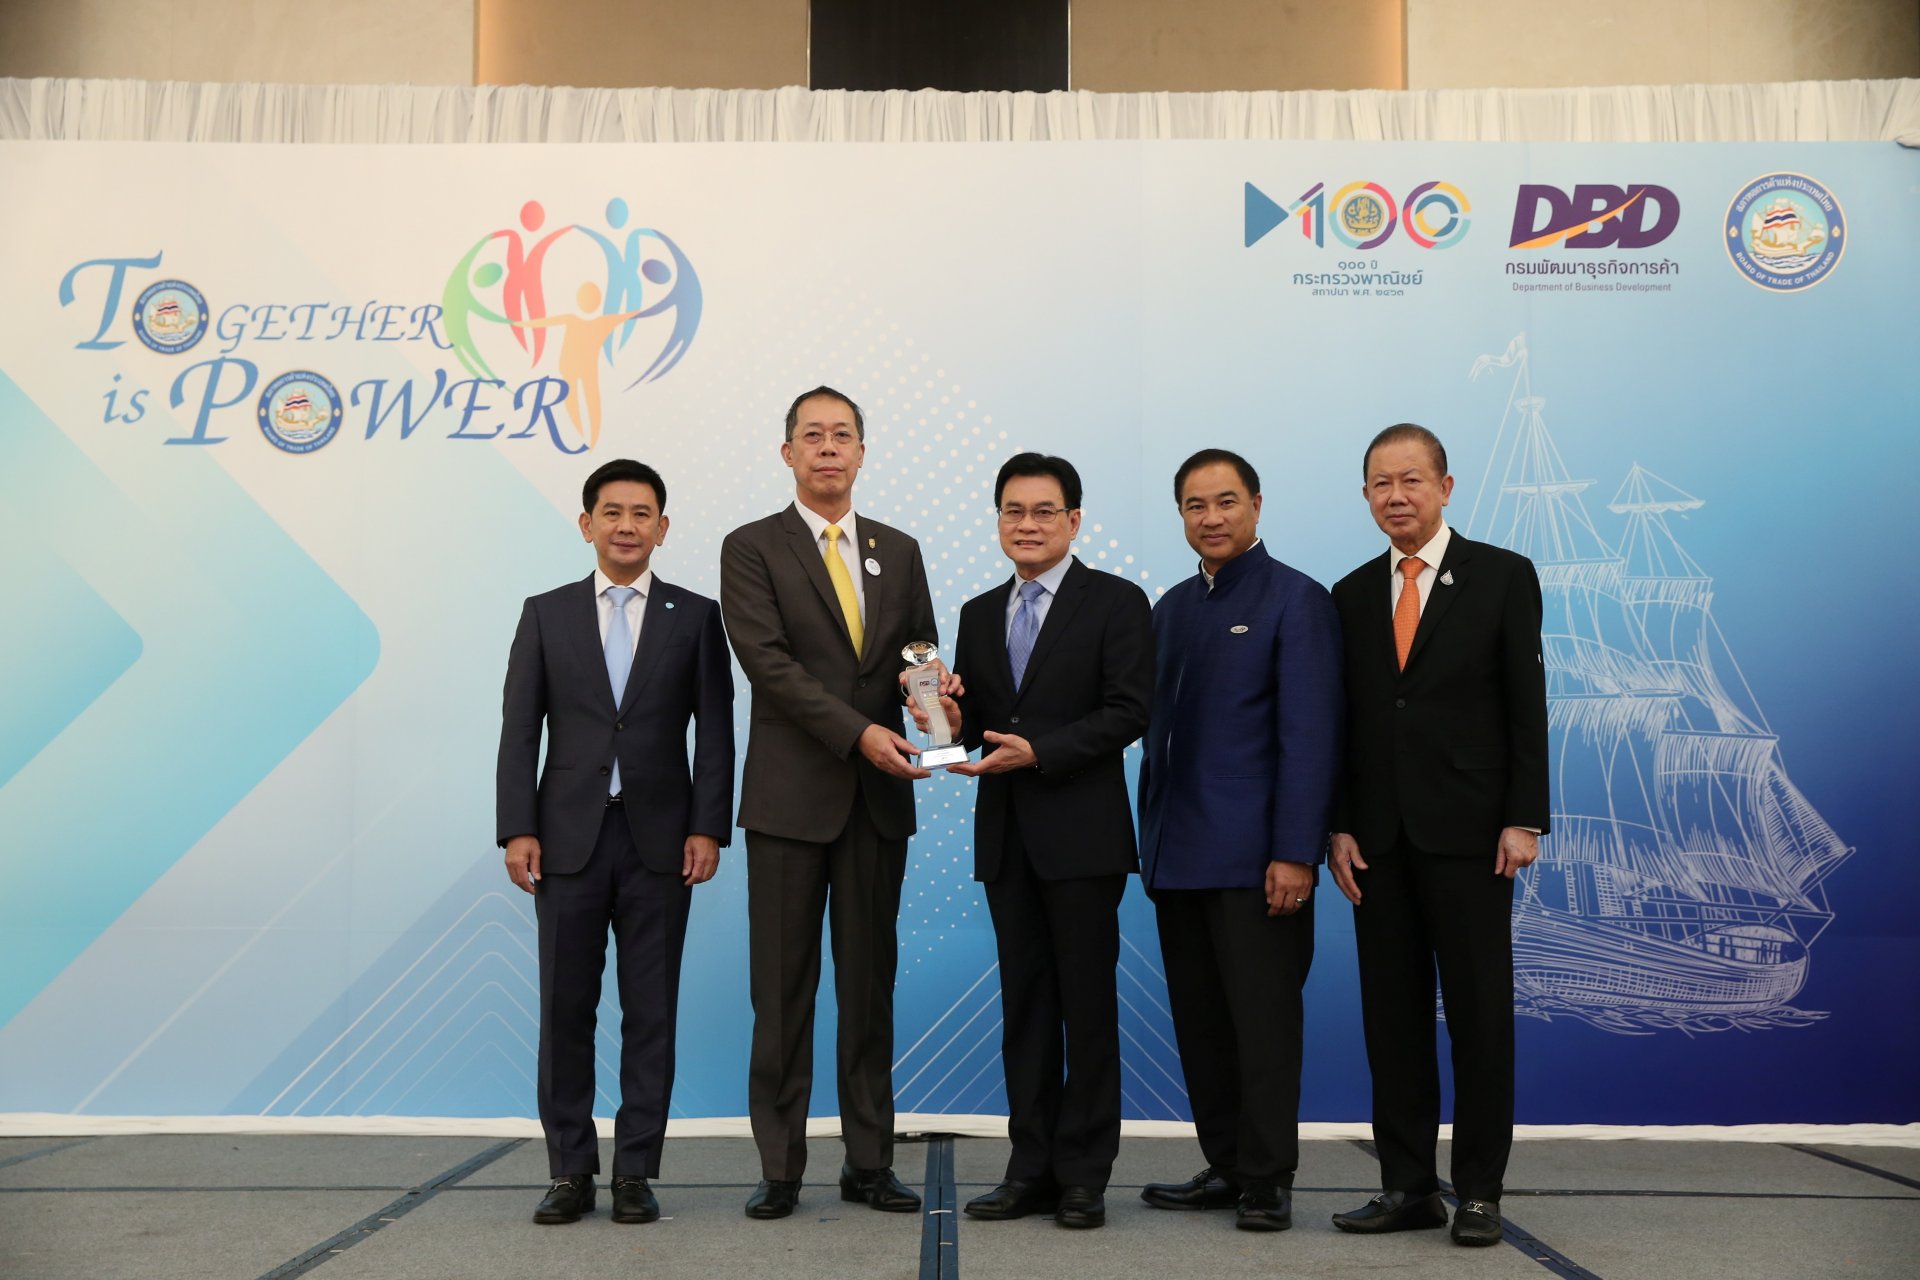 สมาคมรถเช่าไทย ได้รับรางวัลสมาคมการค้าดีเด่น ประจำปี 2563